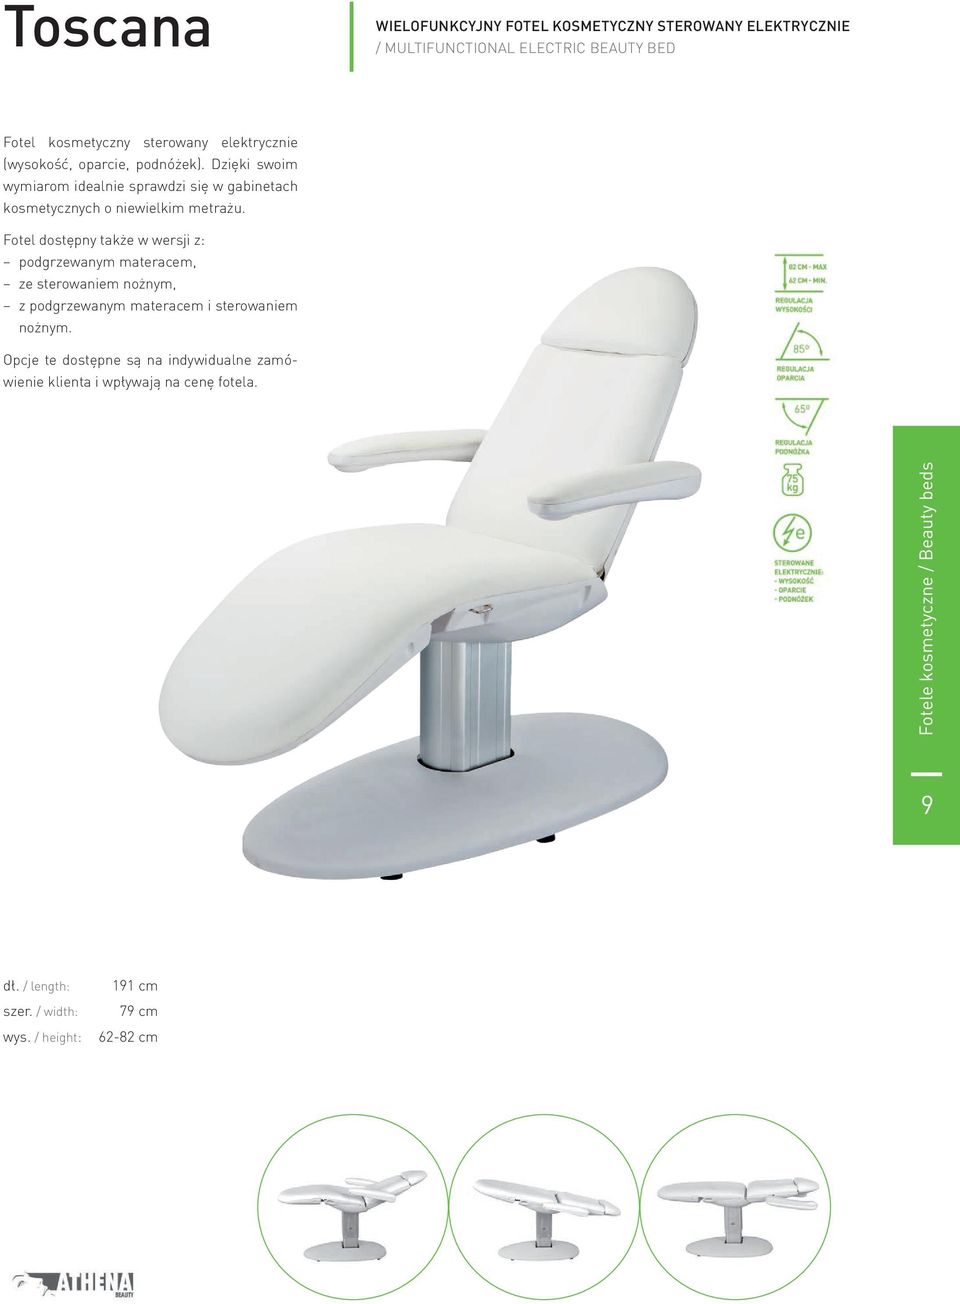 Fotel dostępny także w wersji z: podgrzewanym materacem, ze sterowaniem nożnym, z podgrzewanym materacem i sterowaniem nożnym.